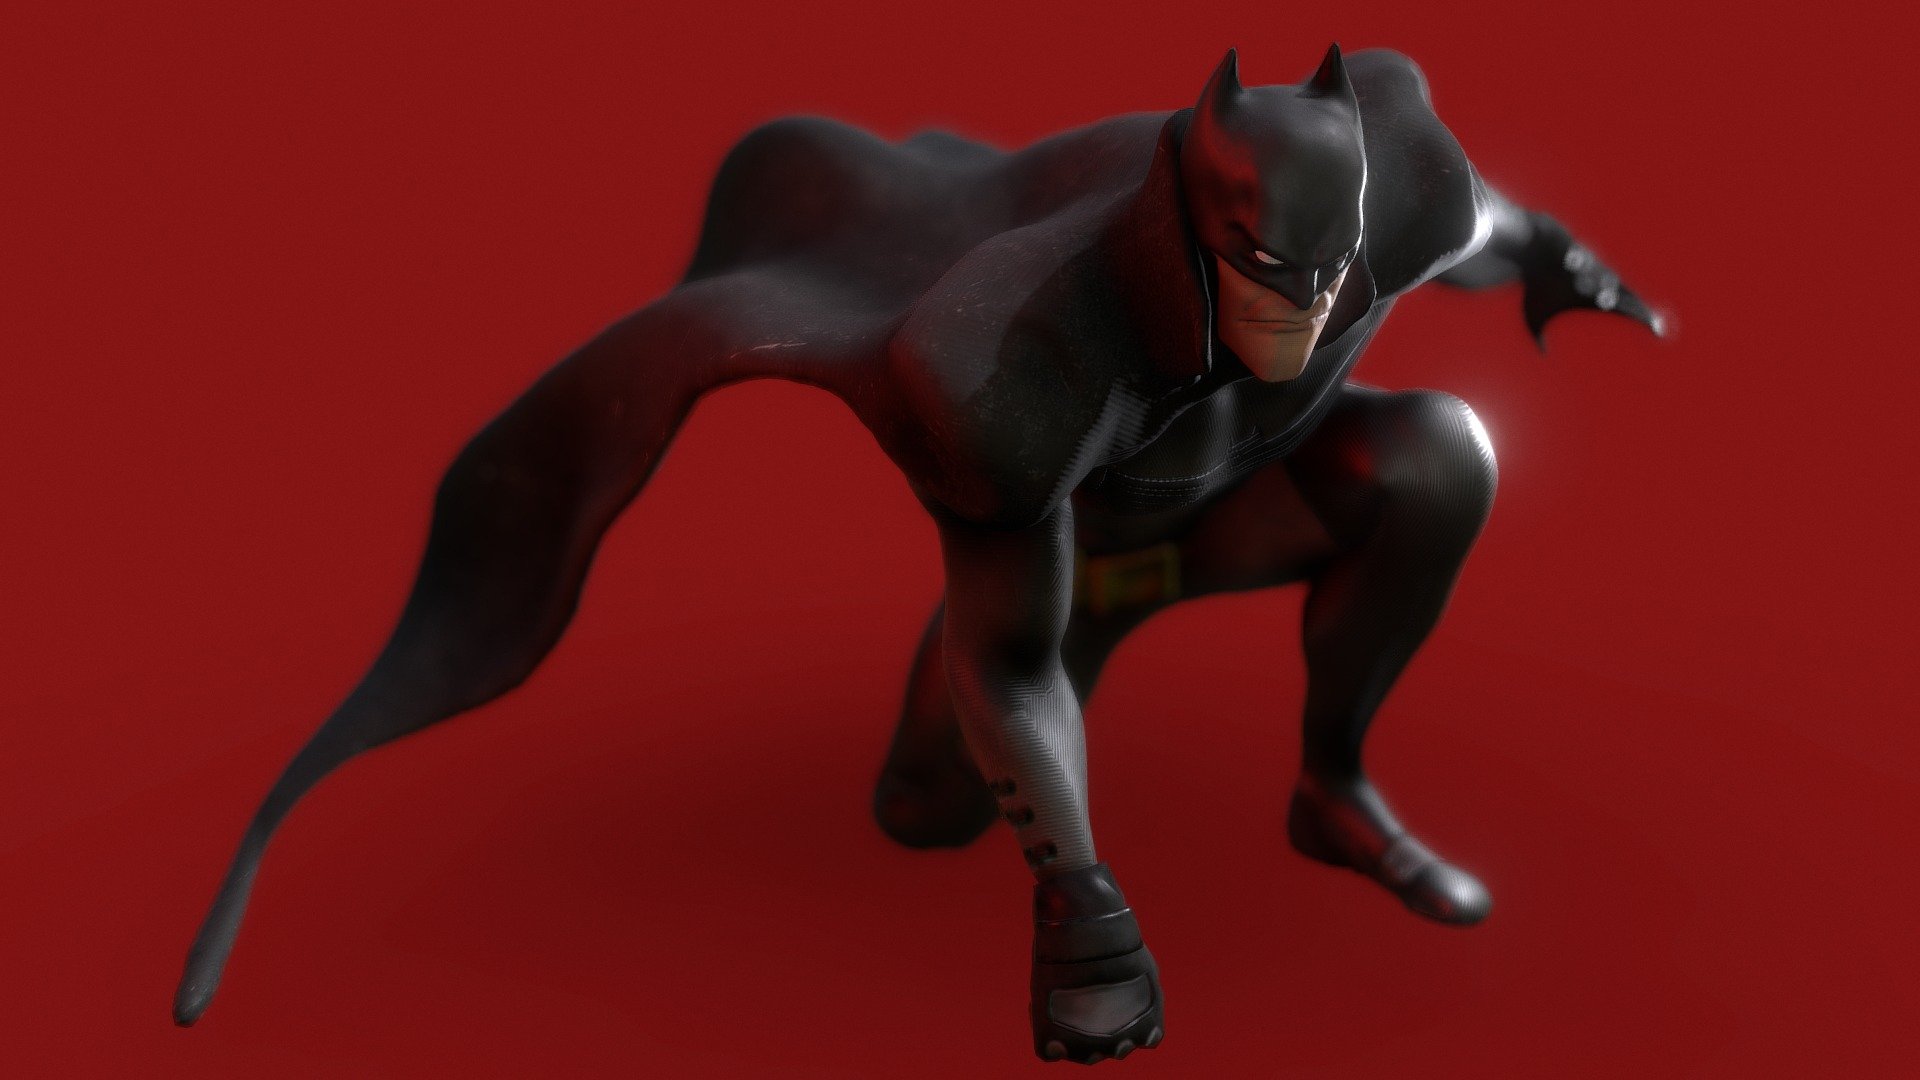 The model inspired by Sean Murphy's Batman from Batman White Knight 3d model